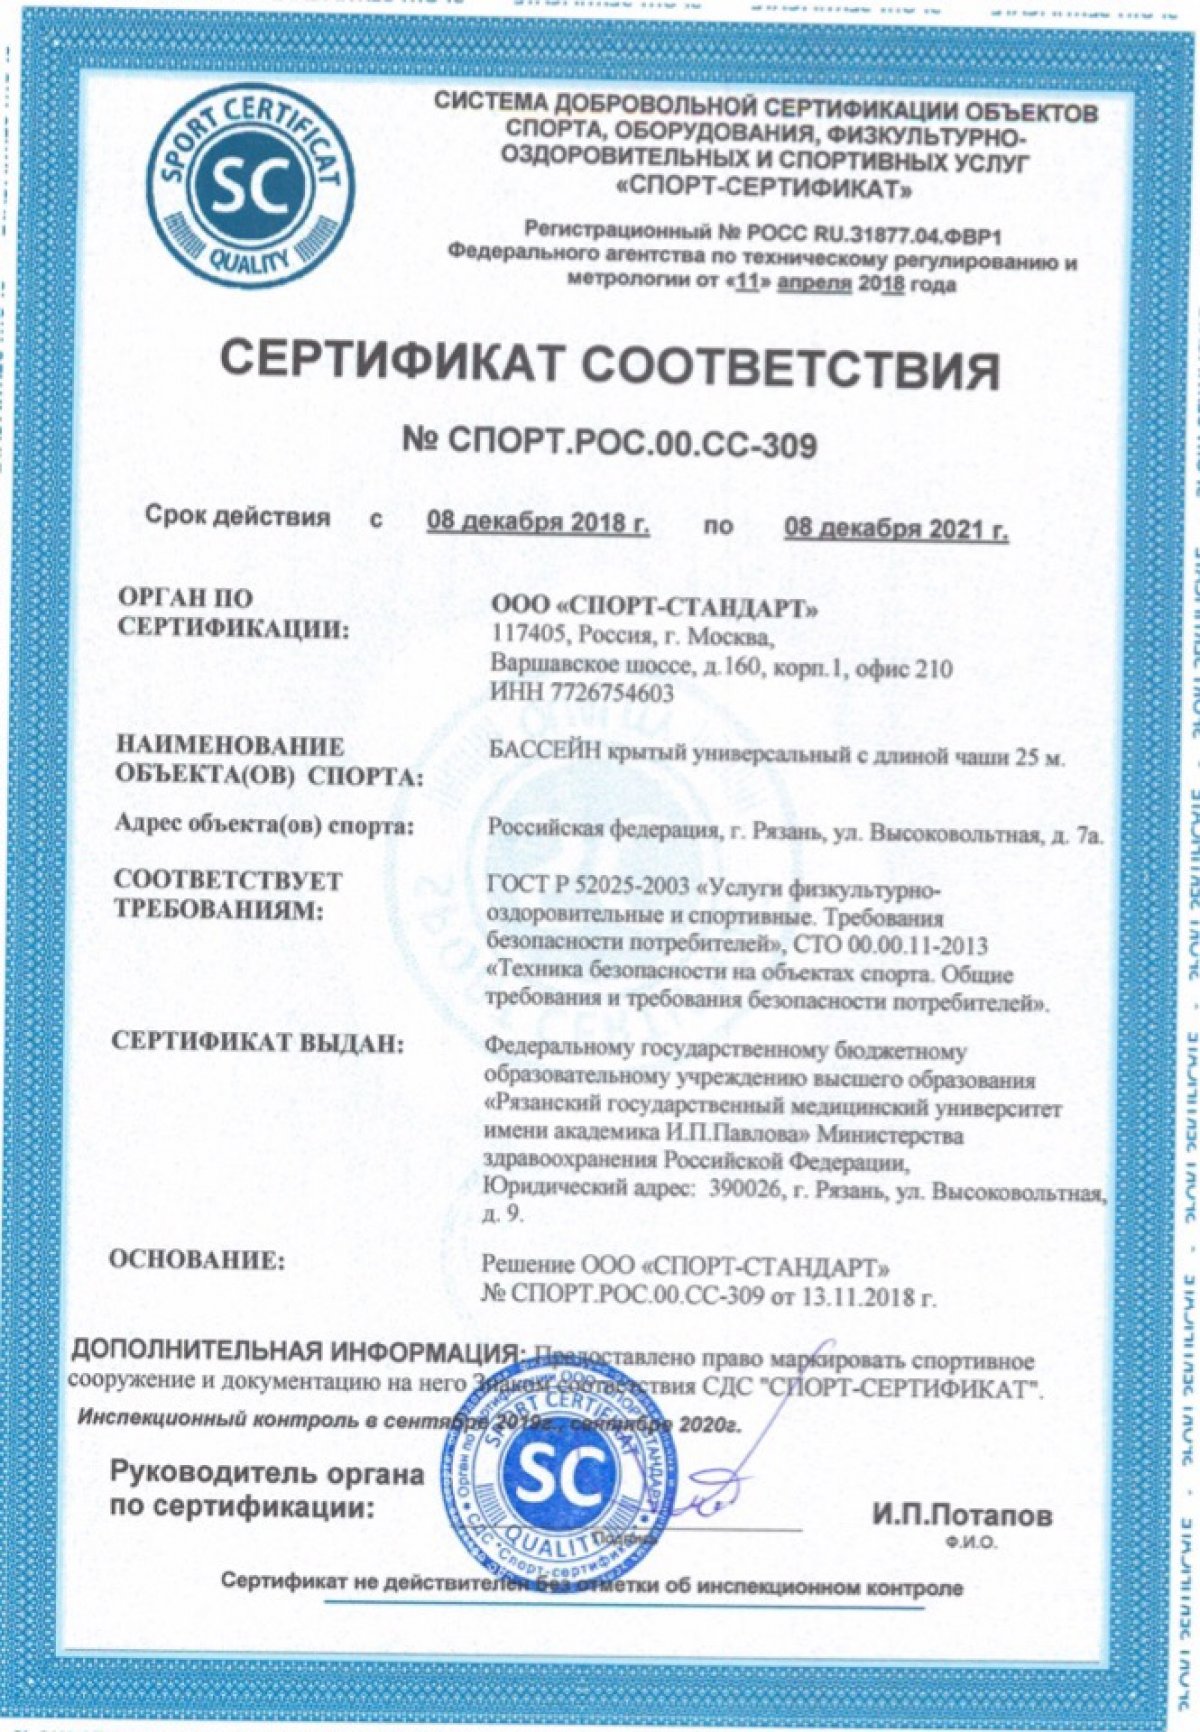 Бассейн РязГМУ «Аквамед» прошел добровольную сертификацию и подтвердил право состоять во Всероссийском реестре объектов спорта.